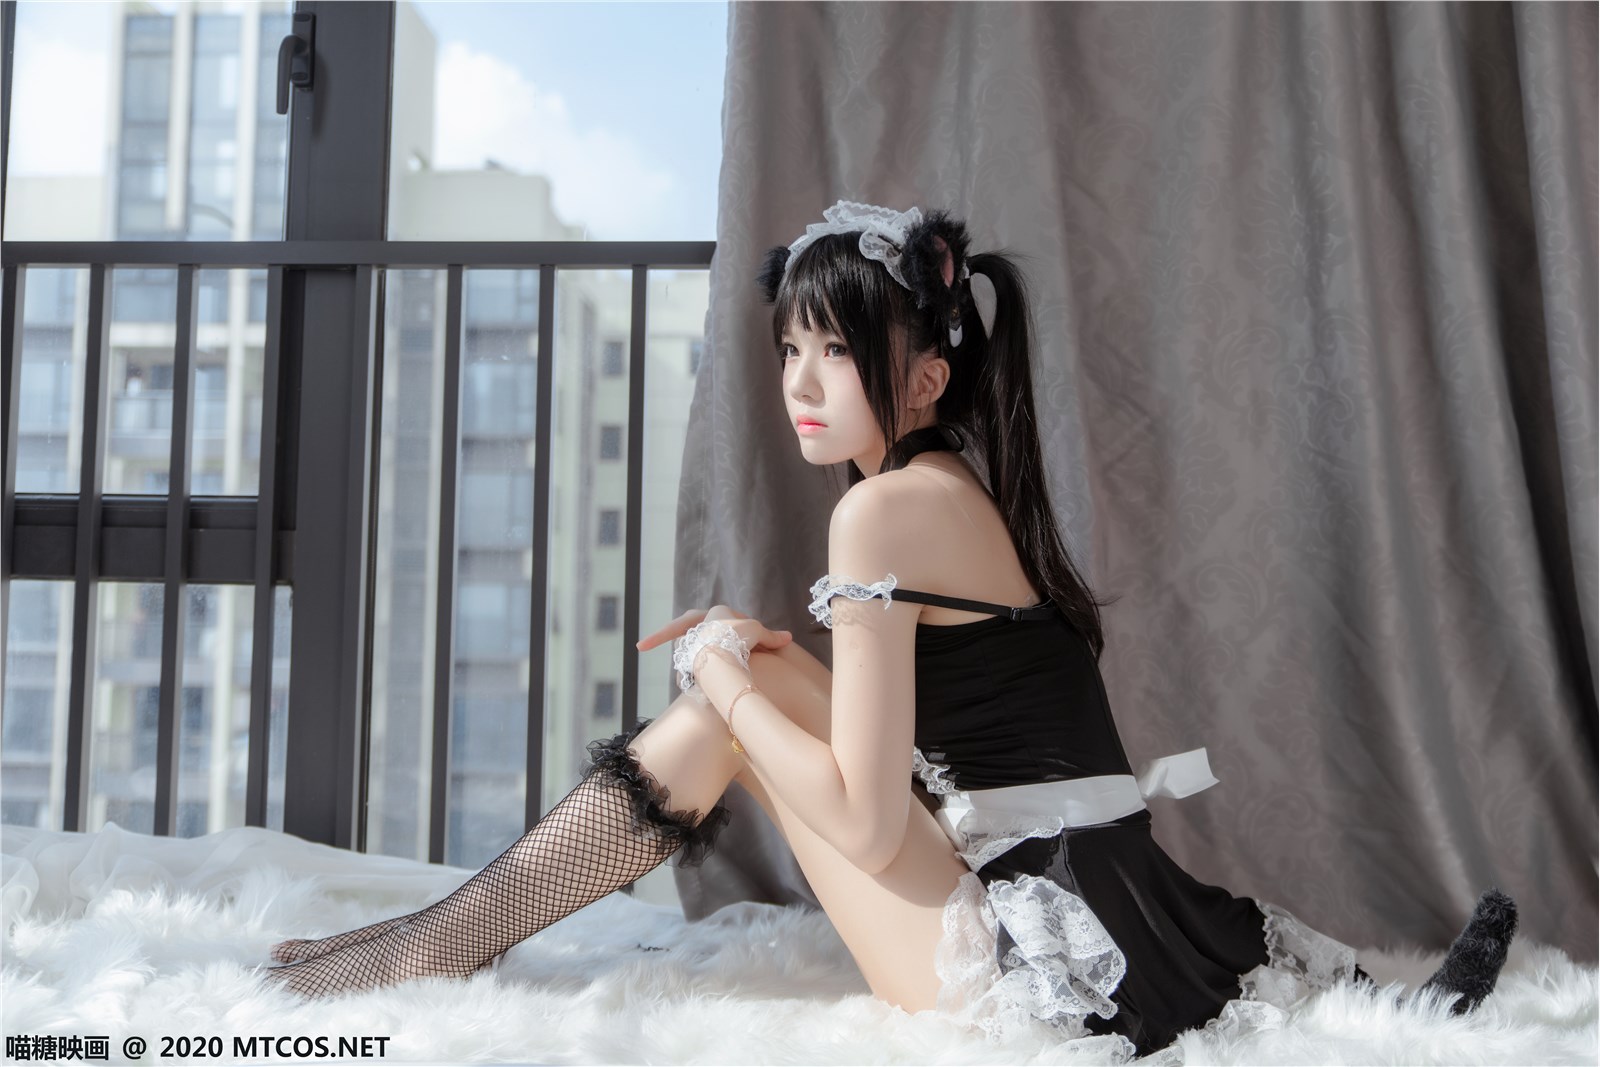 The black cat maid(33)